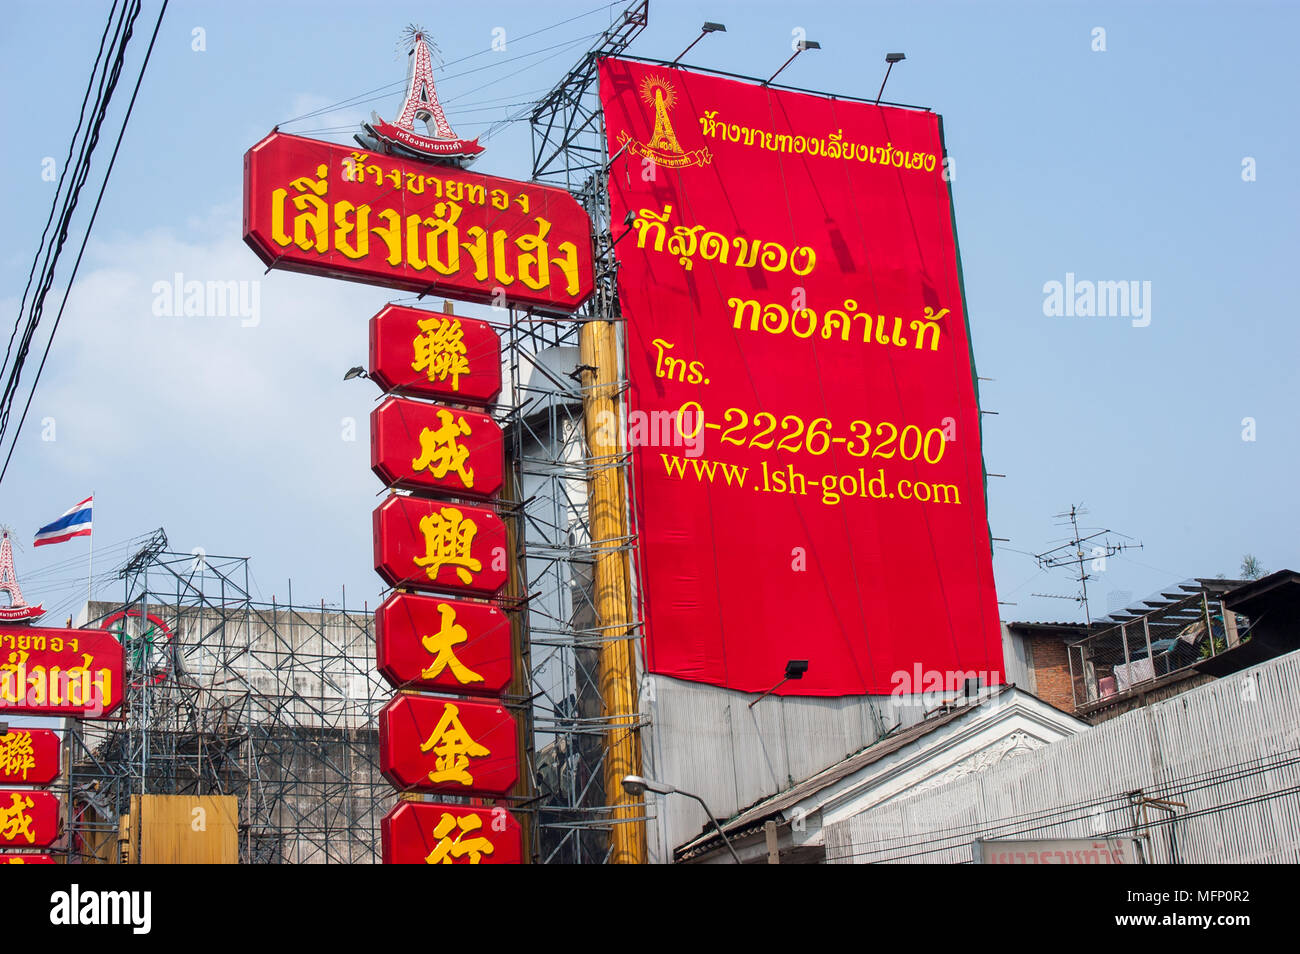 Bandeau publicitaire rouge vif en thaï, chinois et anglais lettres,  Bangkok, Thaïlande Photo Stock - Alamy